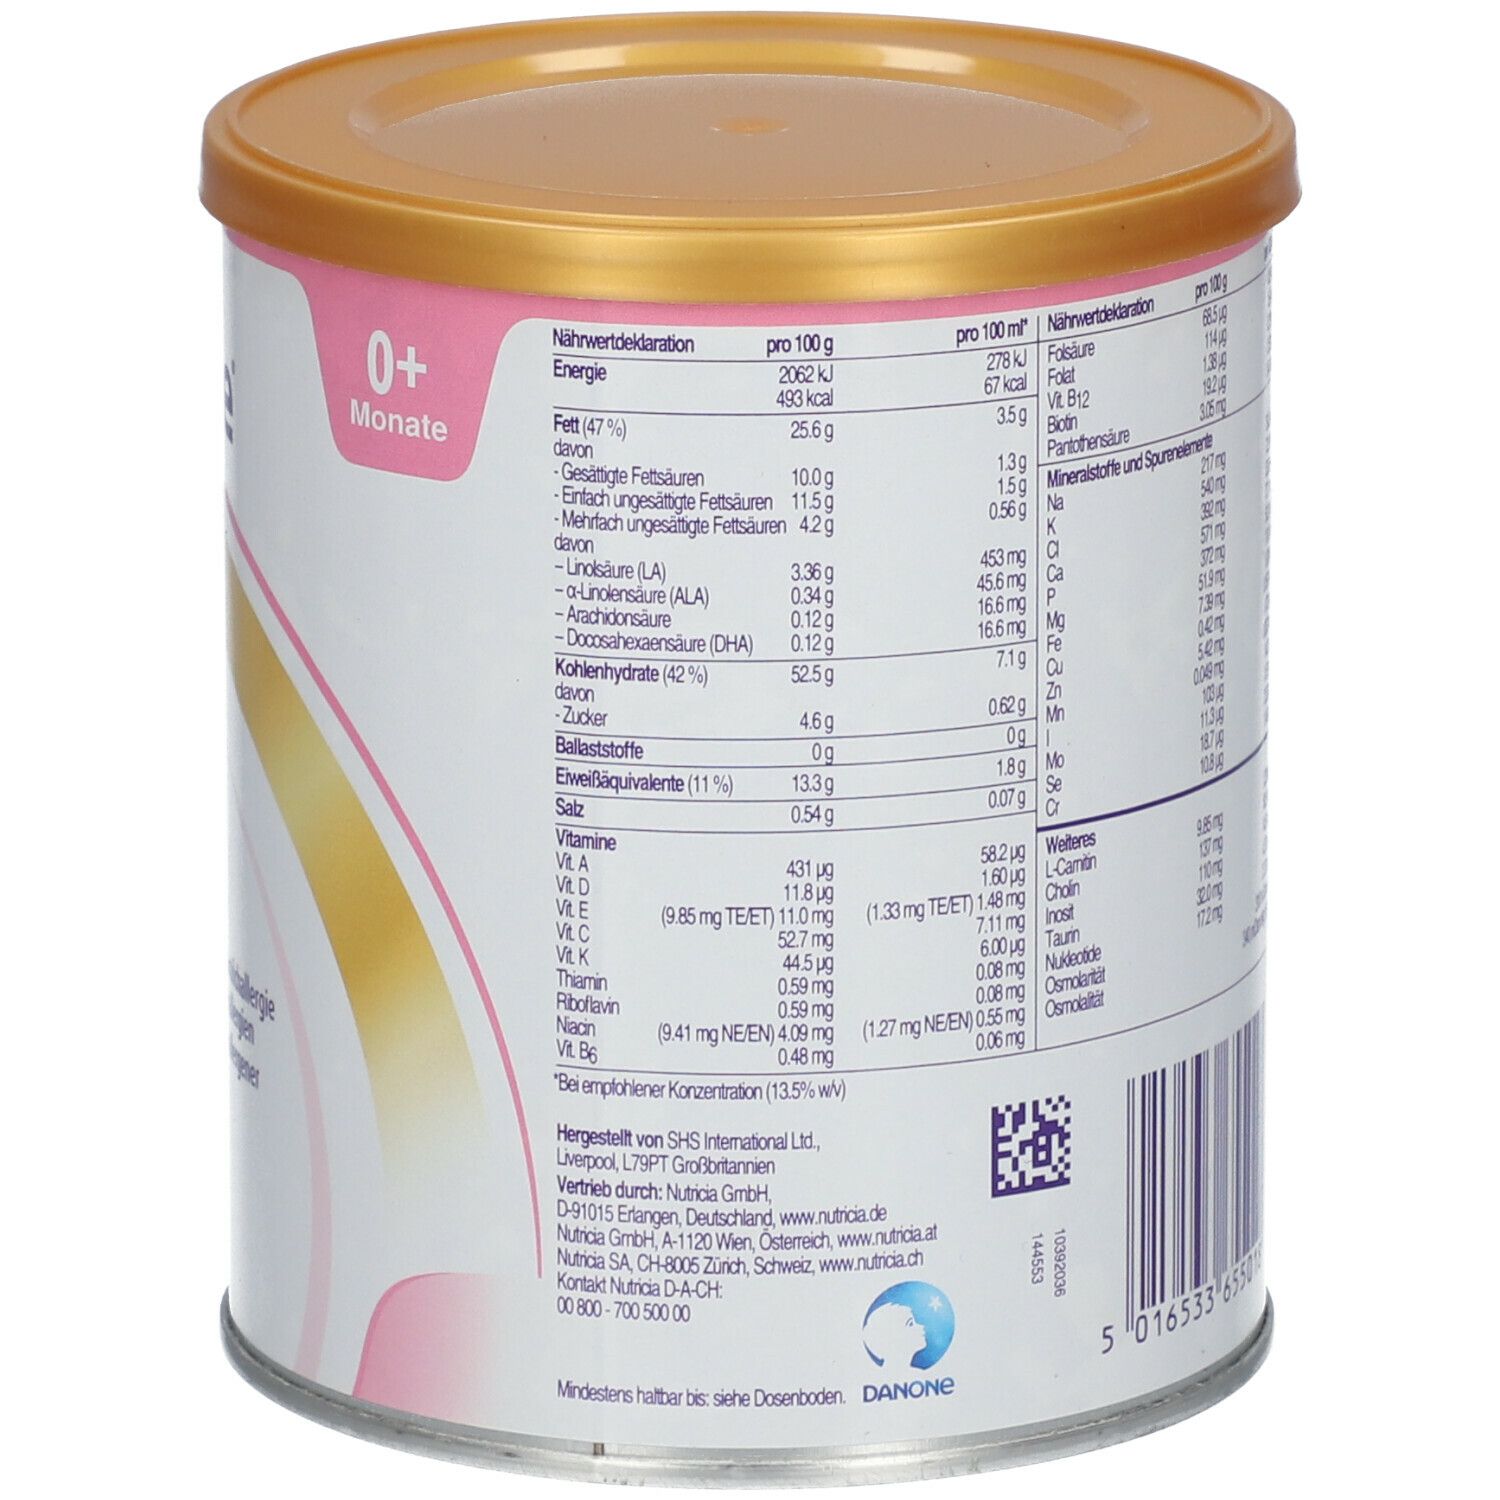 Neocate® Infant Spezialnahrung bei Kuhmilcheiweißallergie